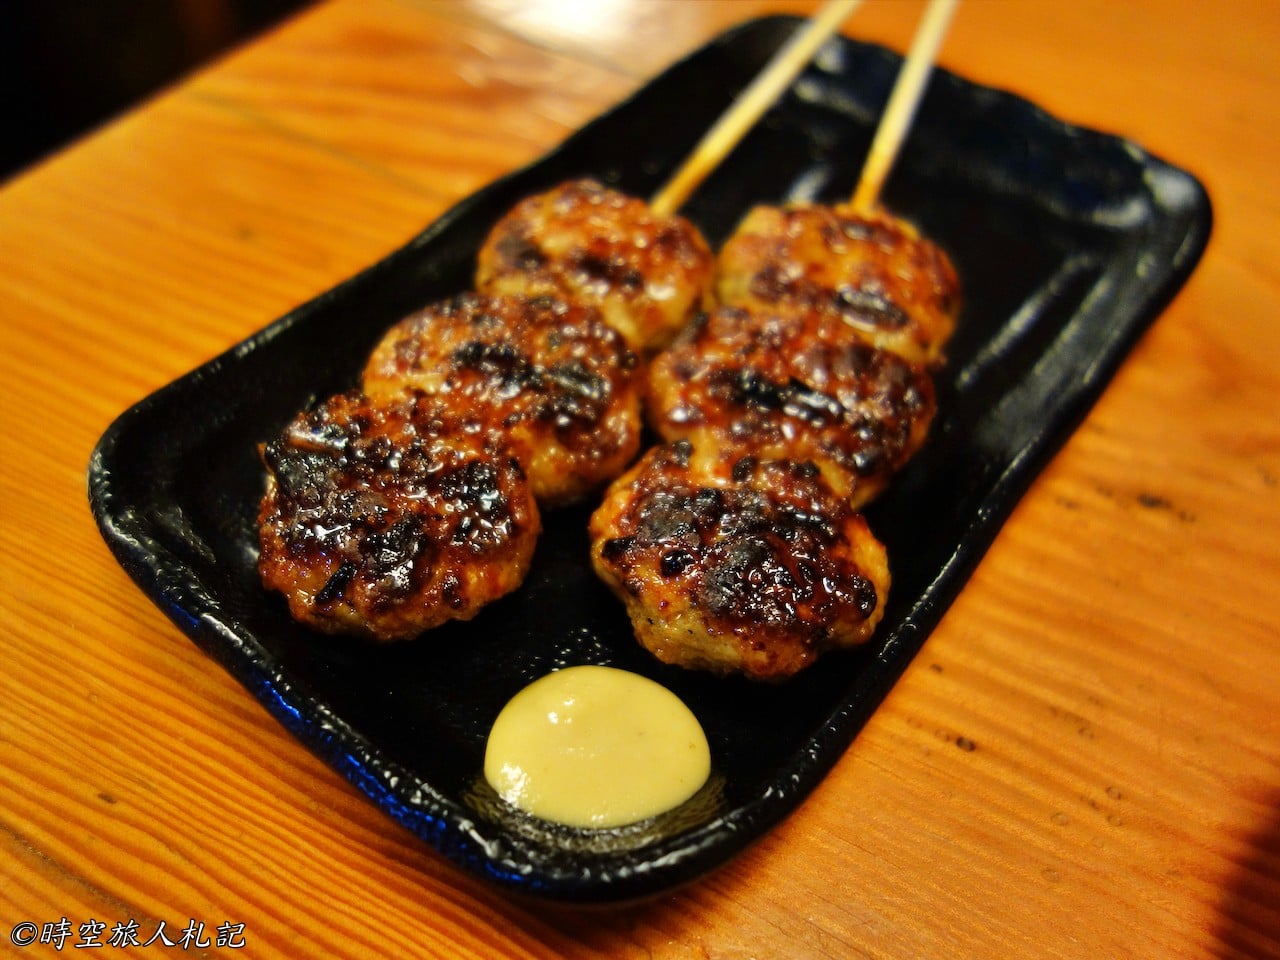 神戶美食,kobe-food,日本神戶美食 37